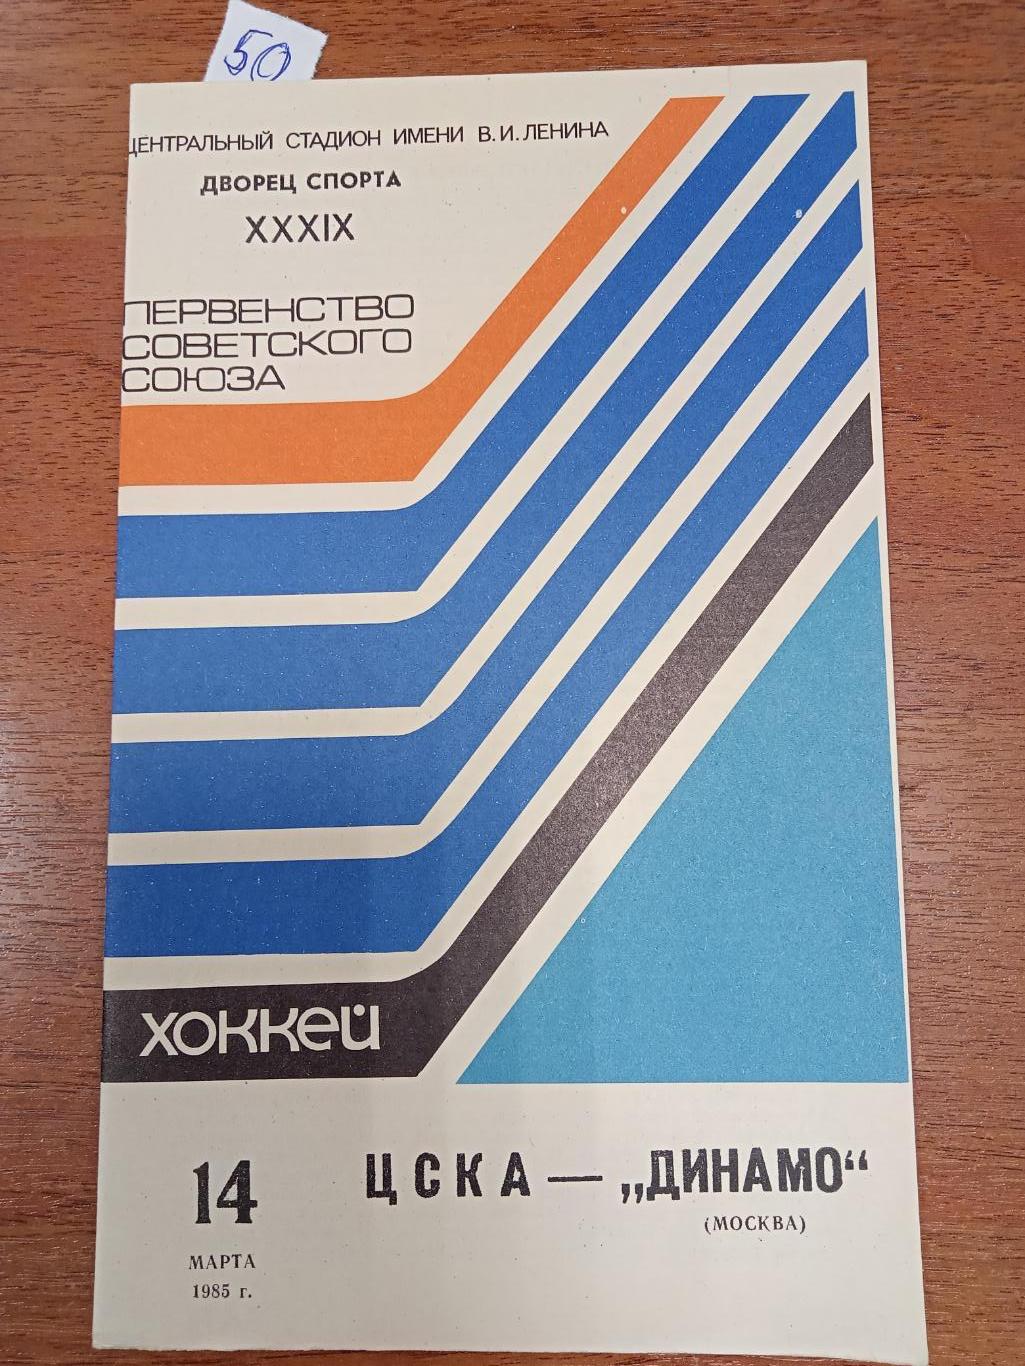 ЦСКА - Динамо Москва 14 марта 1985